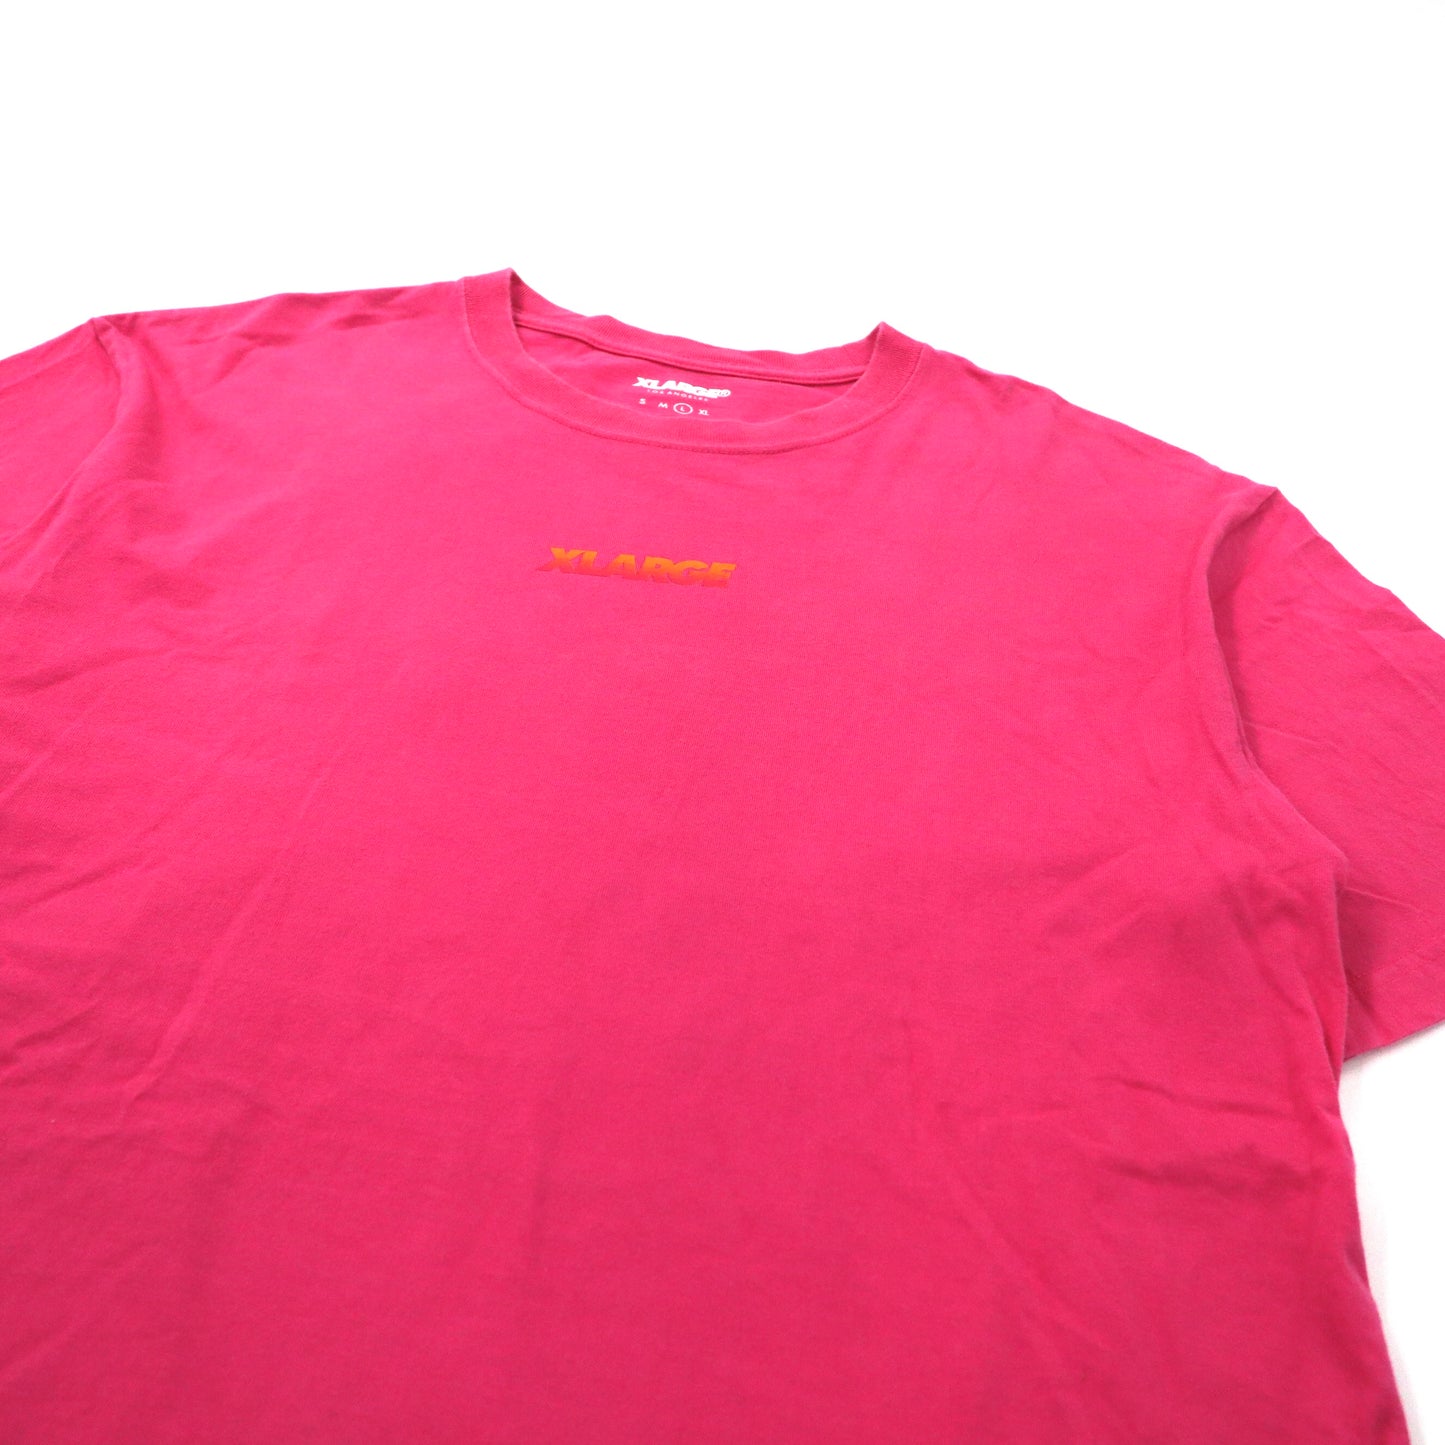 X-LARGE ビッグサイズ ロゴプリントTシャツ L ピンク コットン バックプリント S/S TEE 3 GORILLAS 01173108